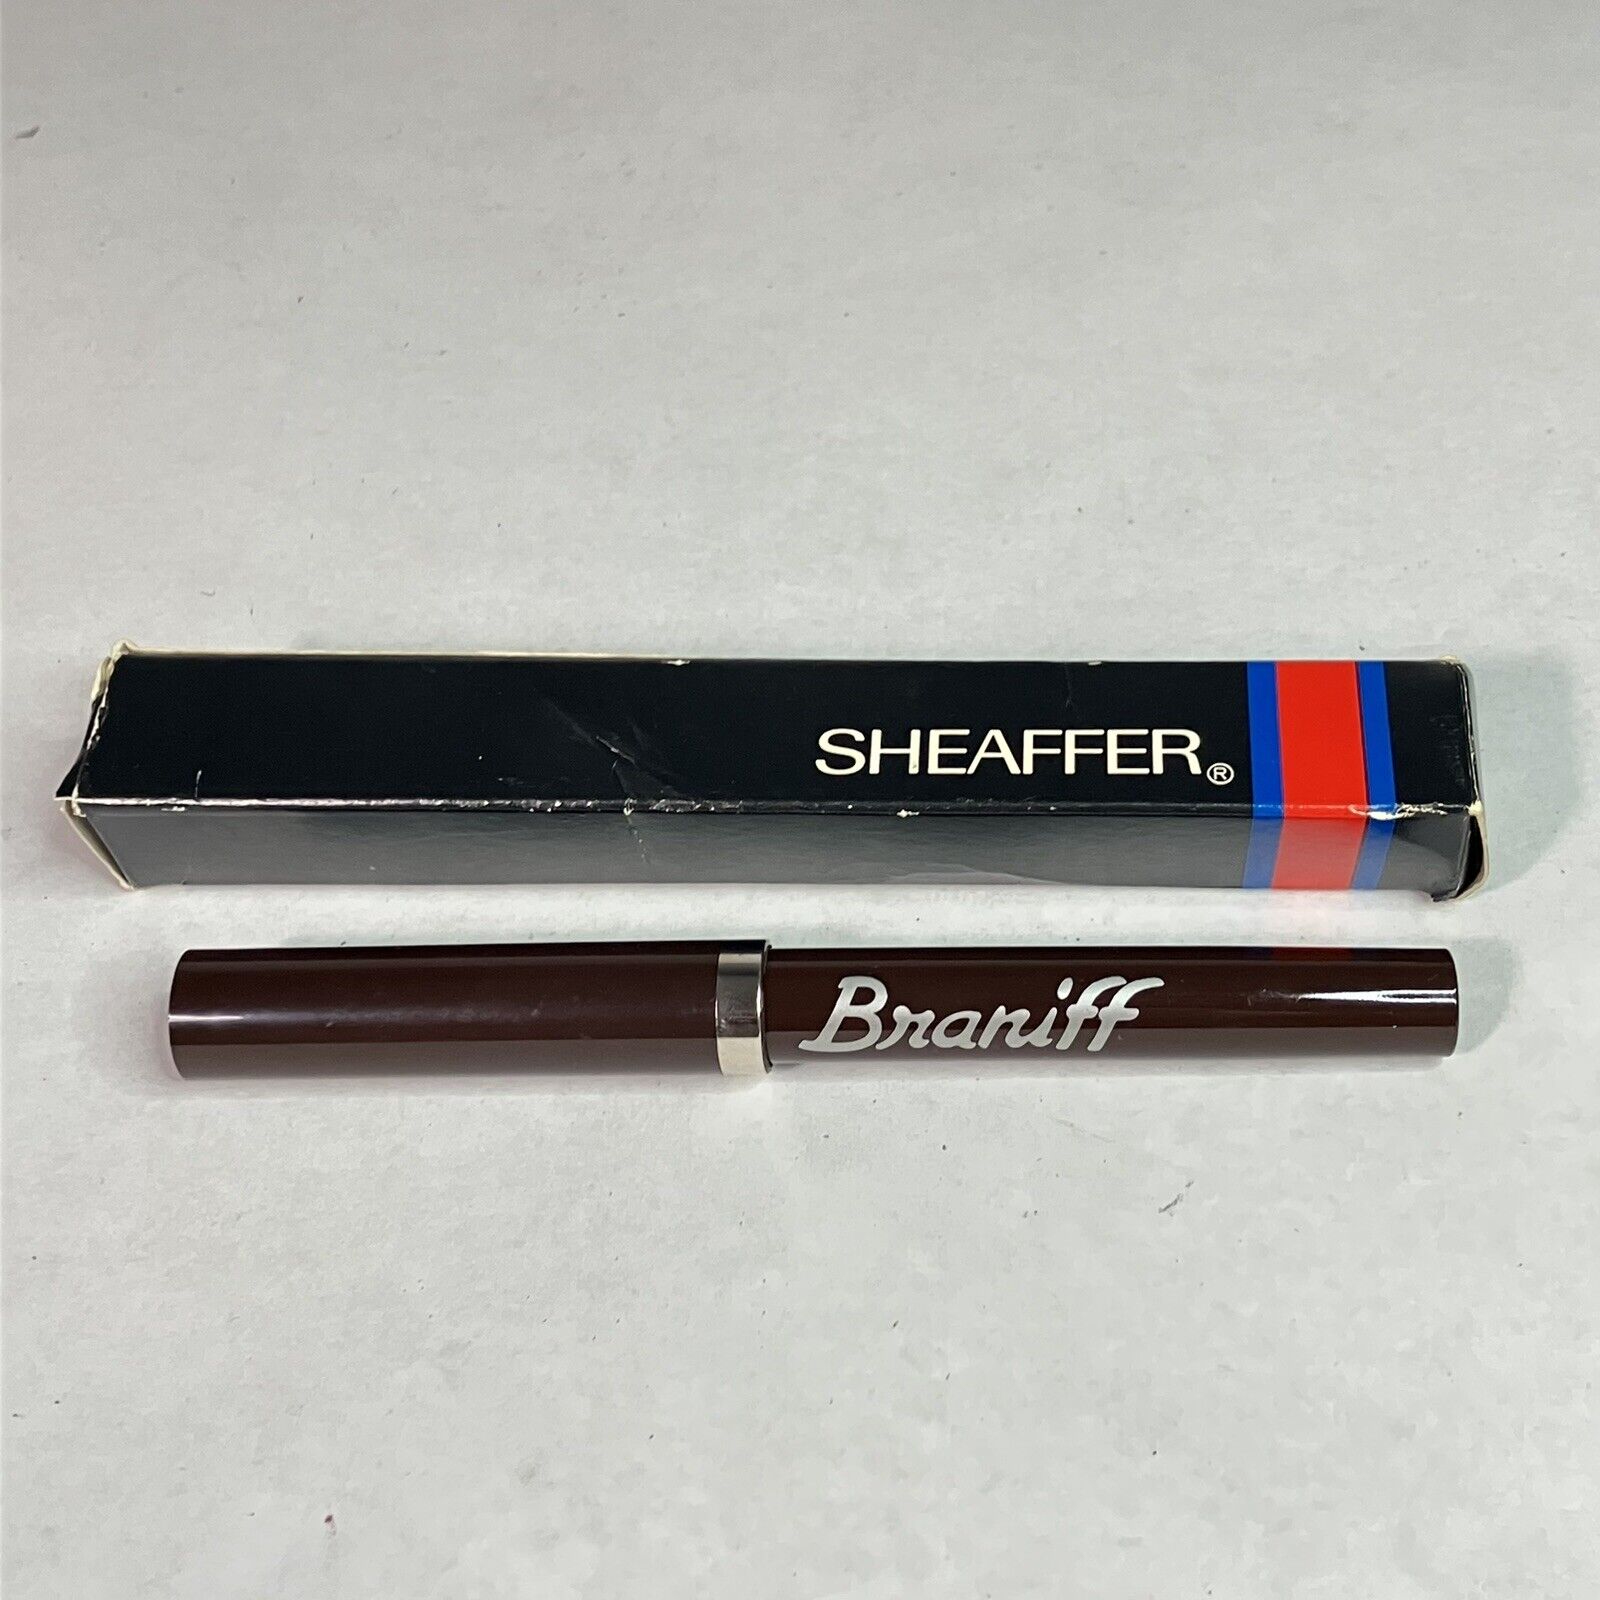 BRANIFF Sheaffer Pen